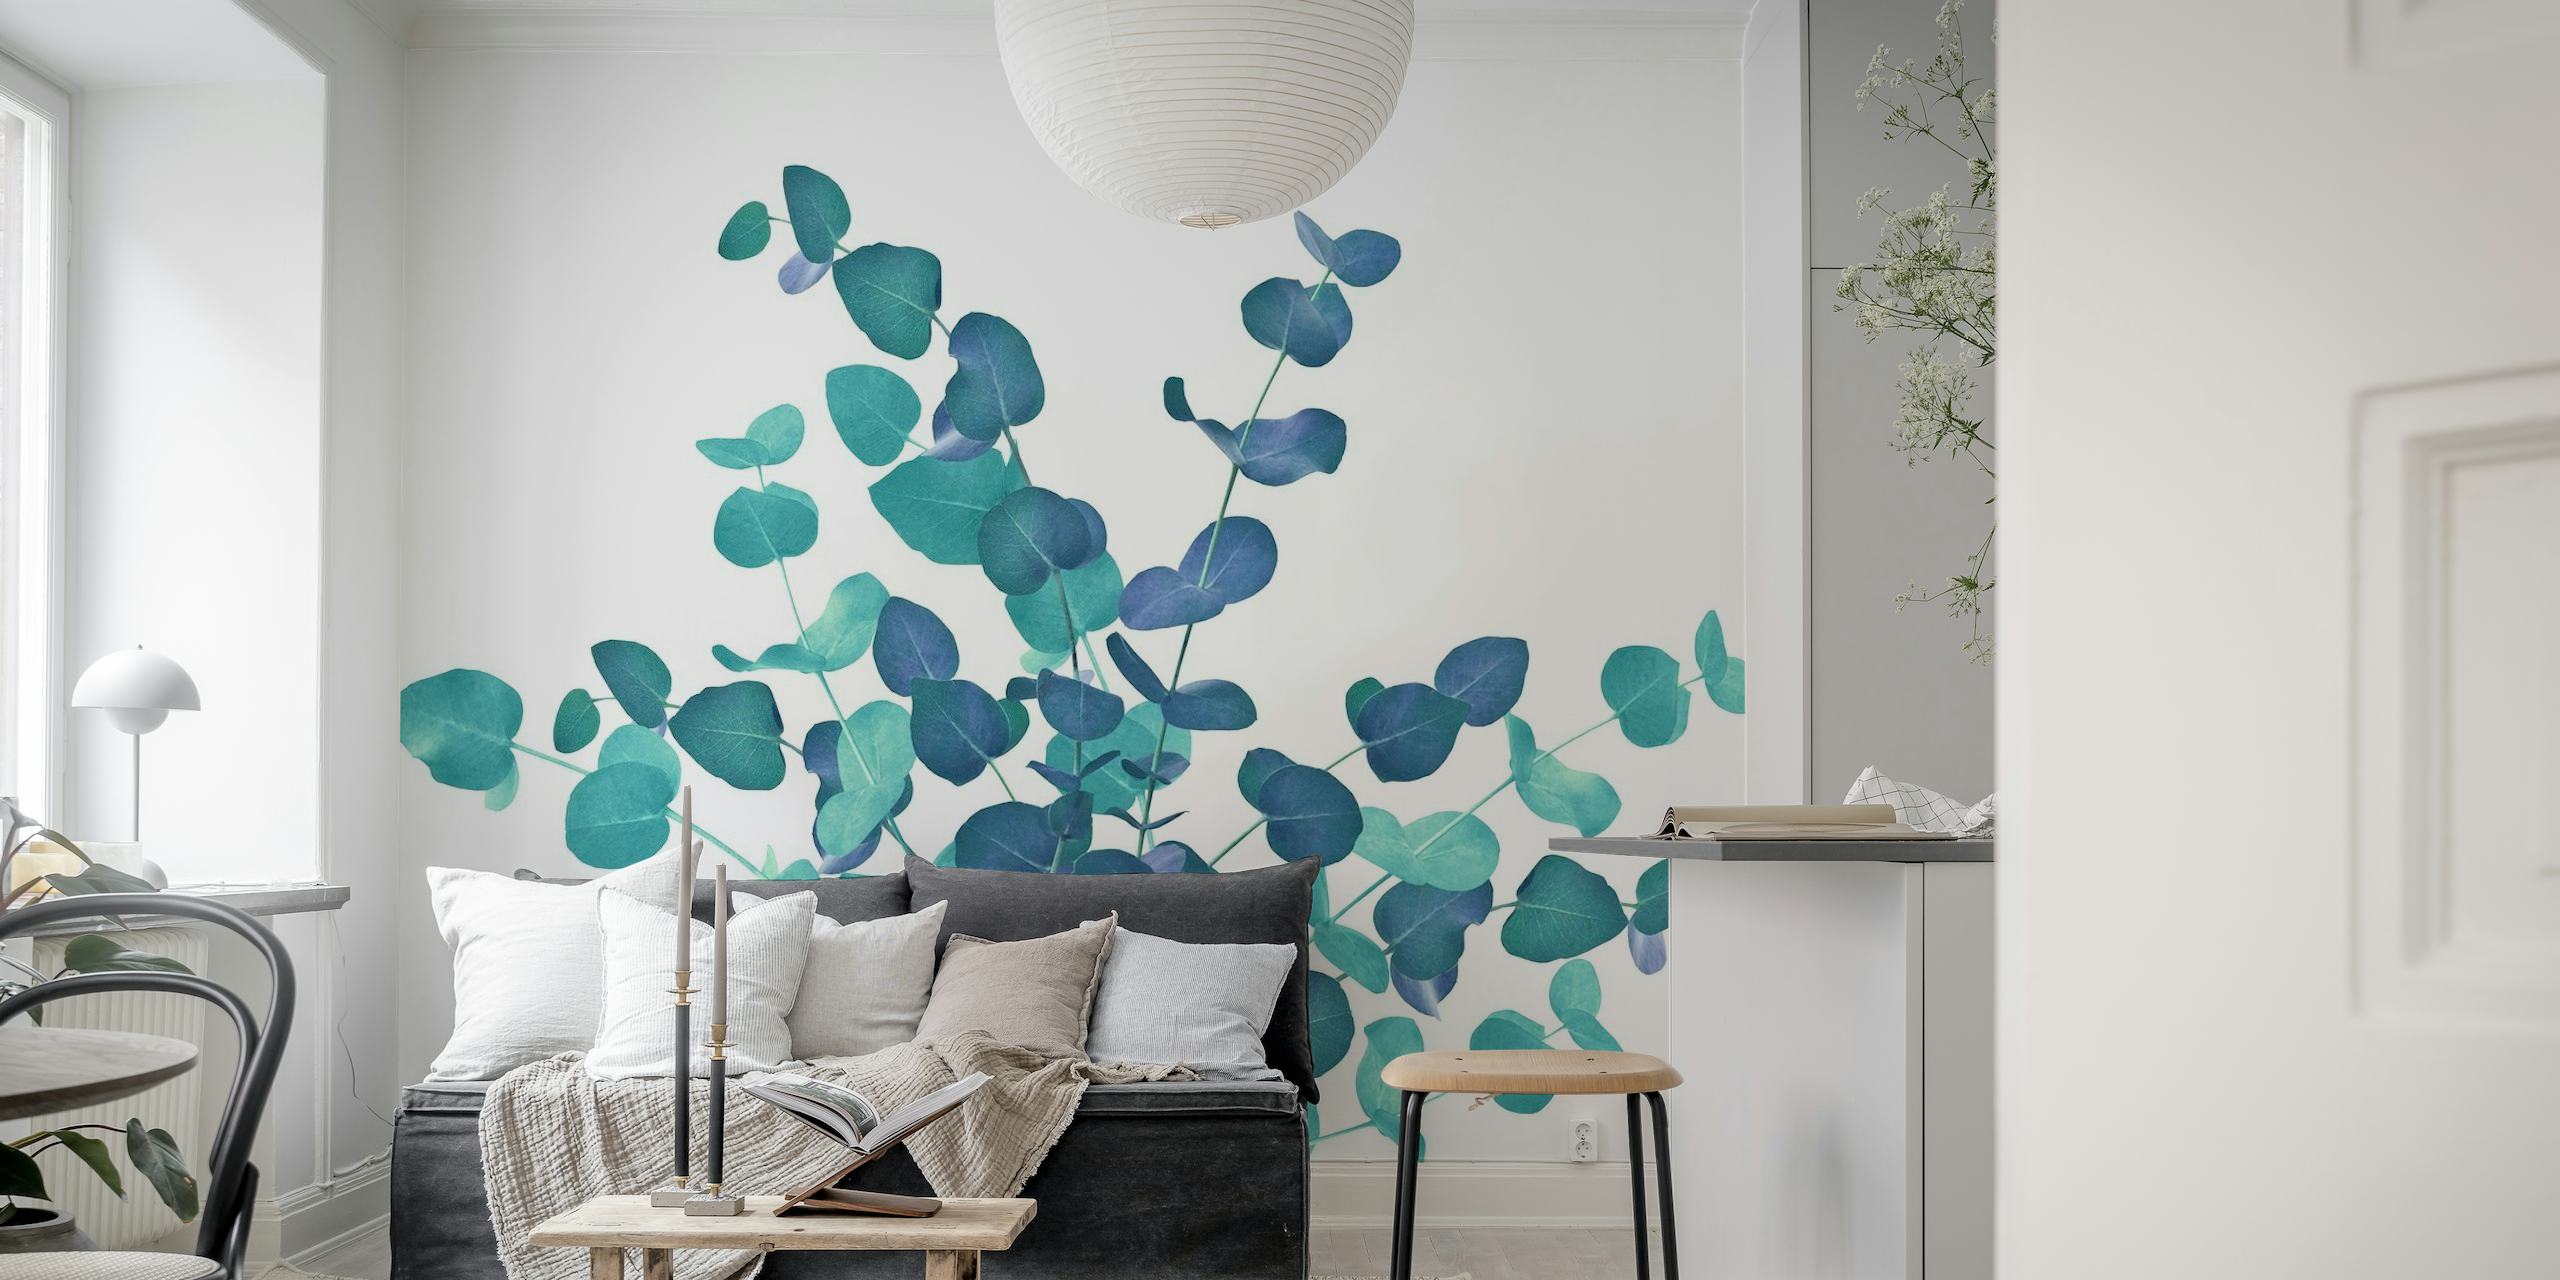 Mural de pared de hojas de eucalipto en tonos azules, creando una serena exhibición botánica